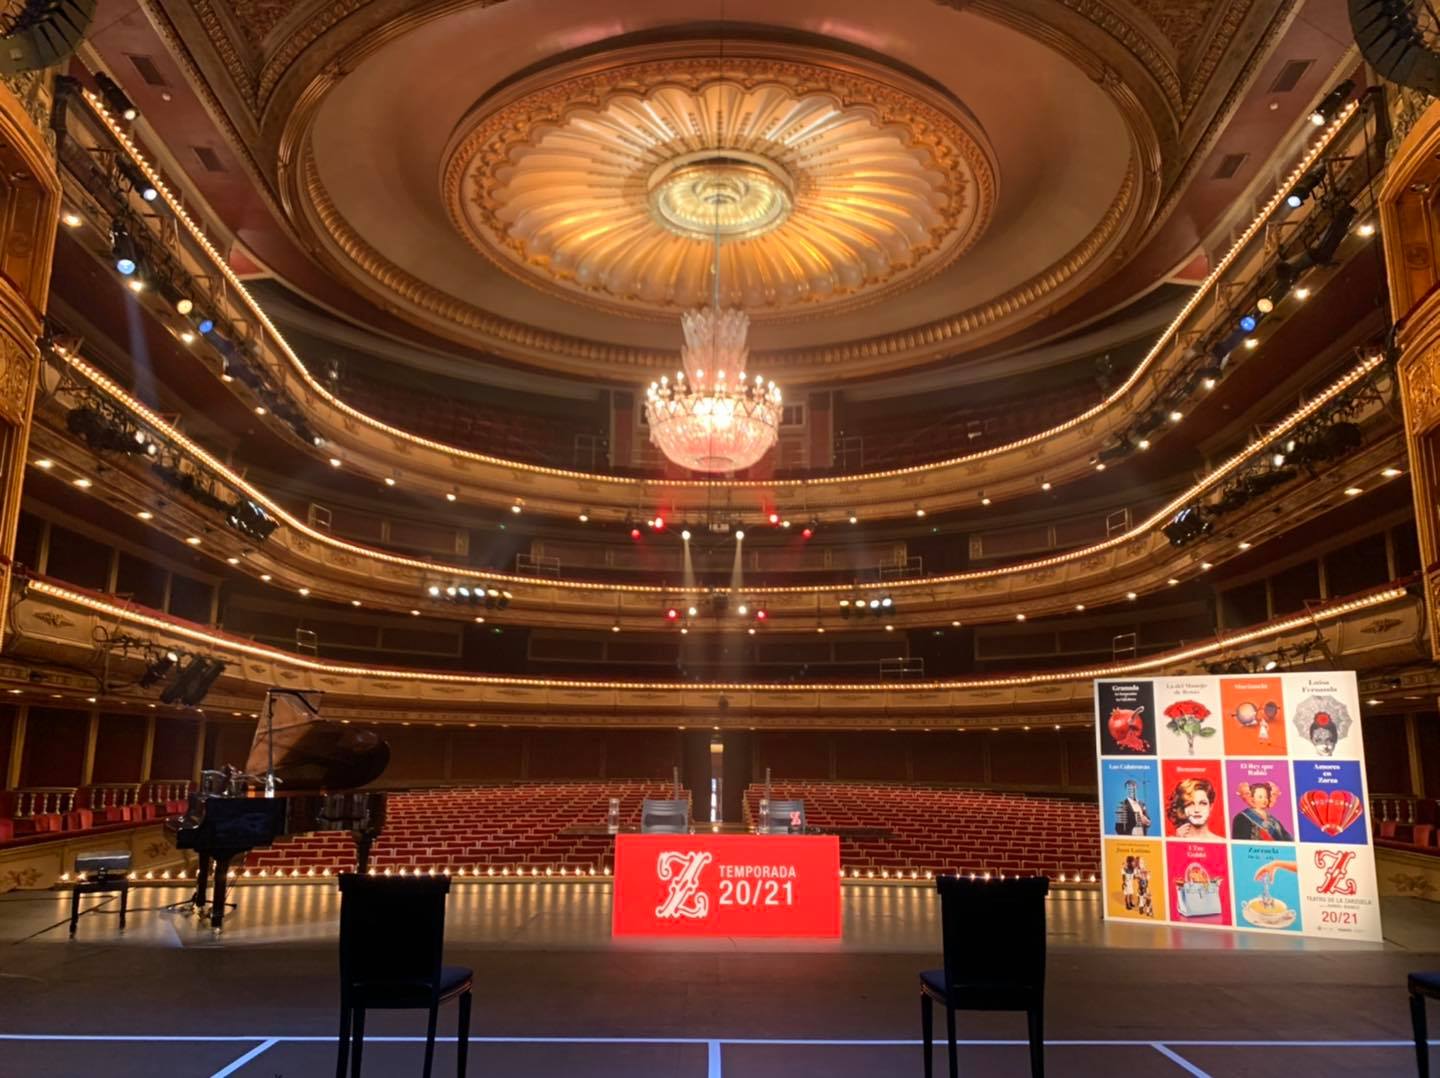 El Teatro de la Zarzuela promete "reprogramar" todos los títulos cancelados